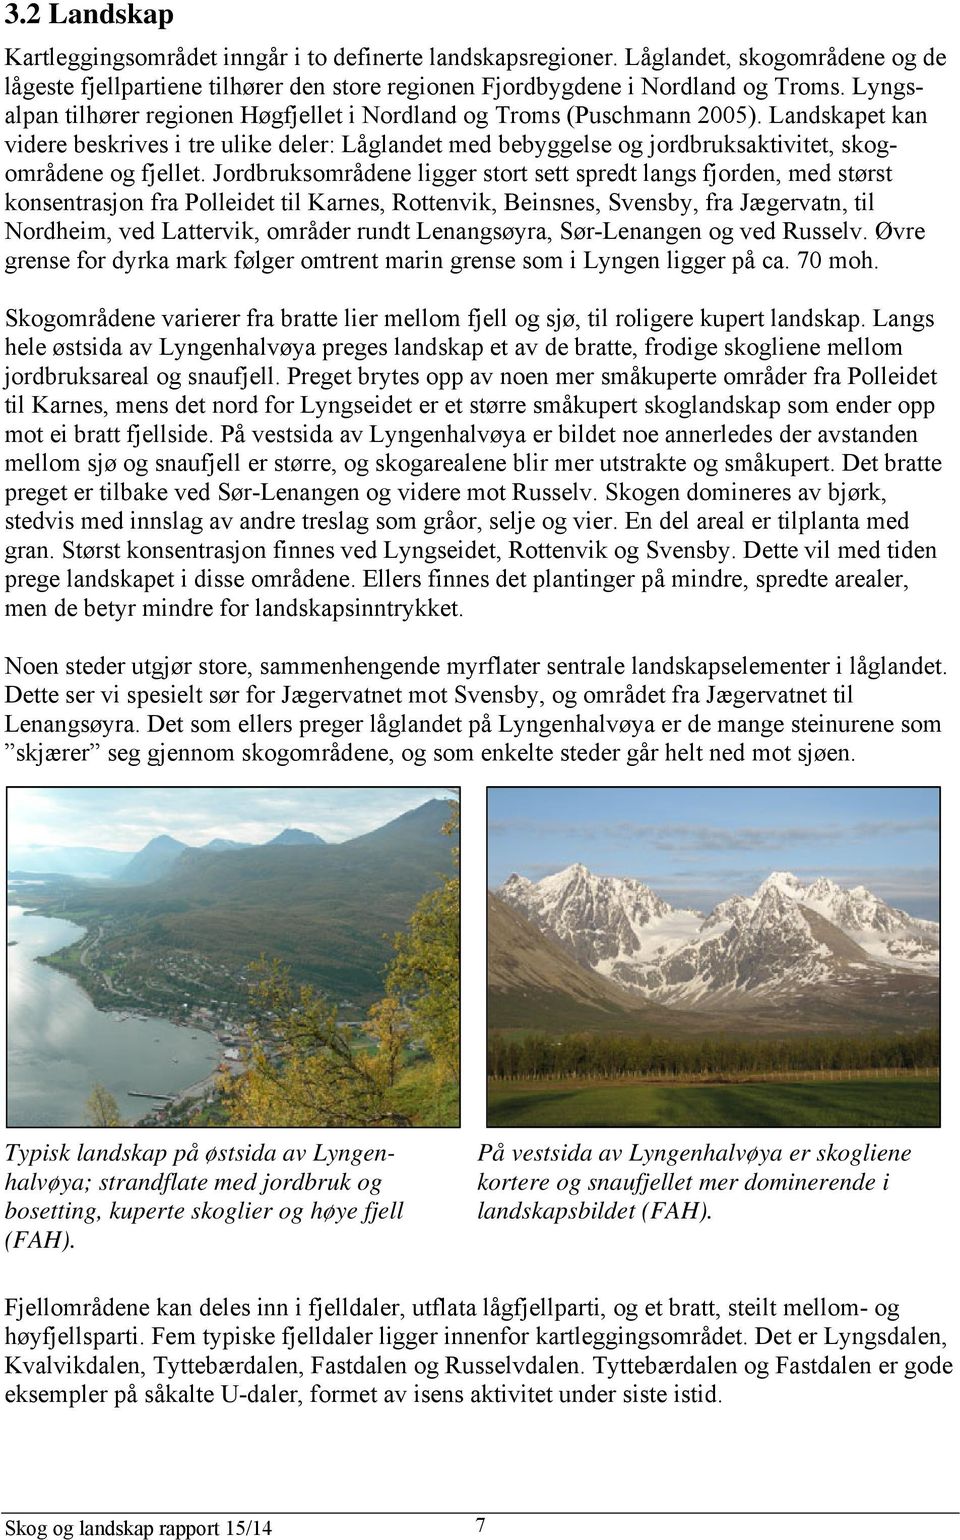 Landskapet kan videre beskrives i tre ulike deler: Låglandet med bebyggelse og jordbruksaktivitet, skogområdene og fjellet.